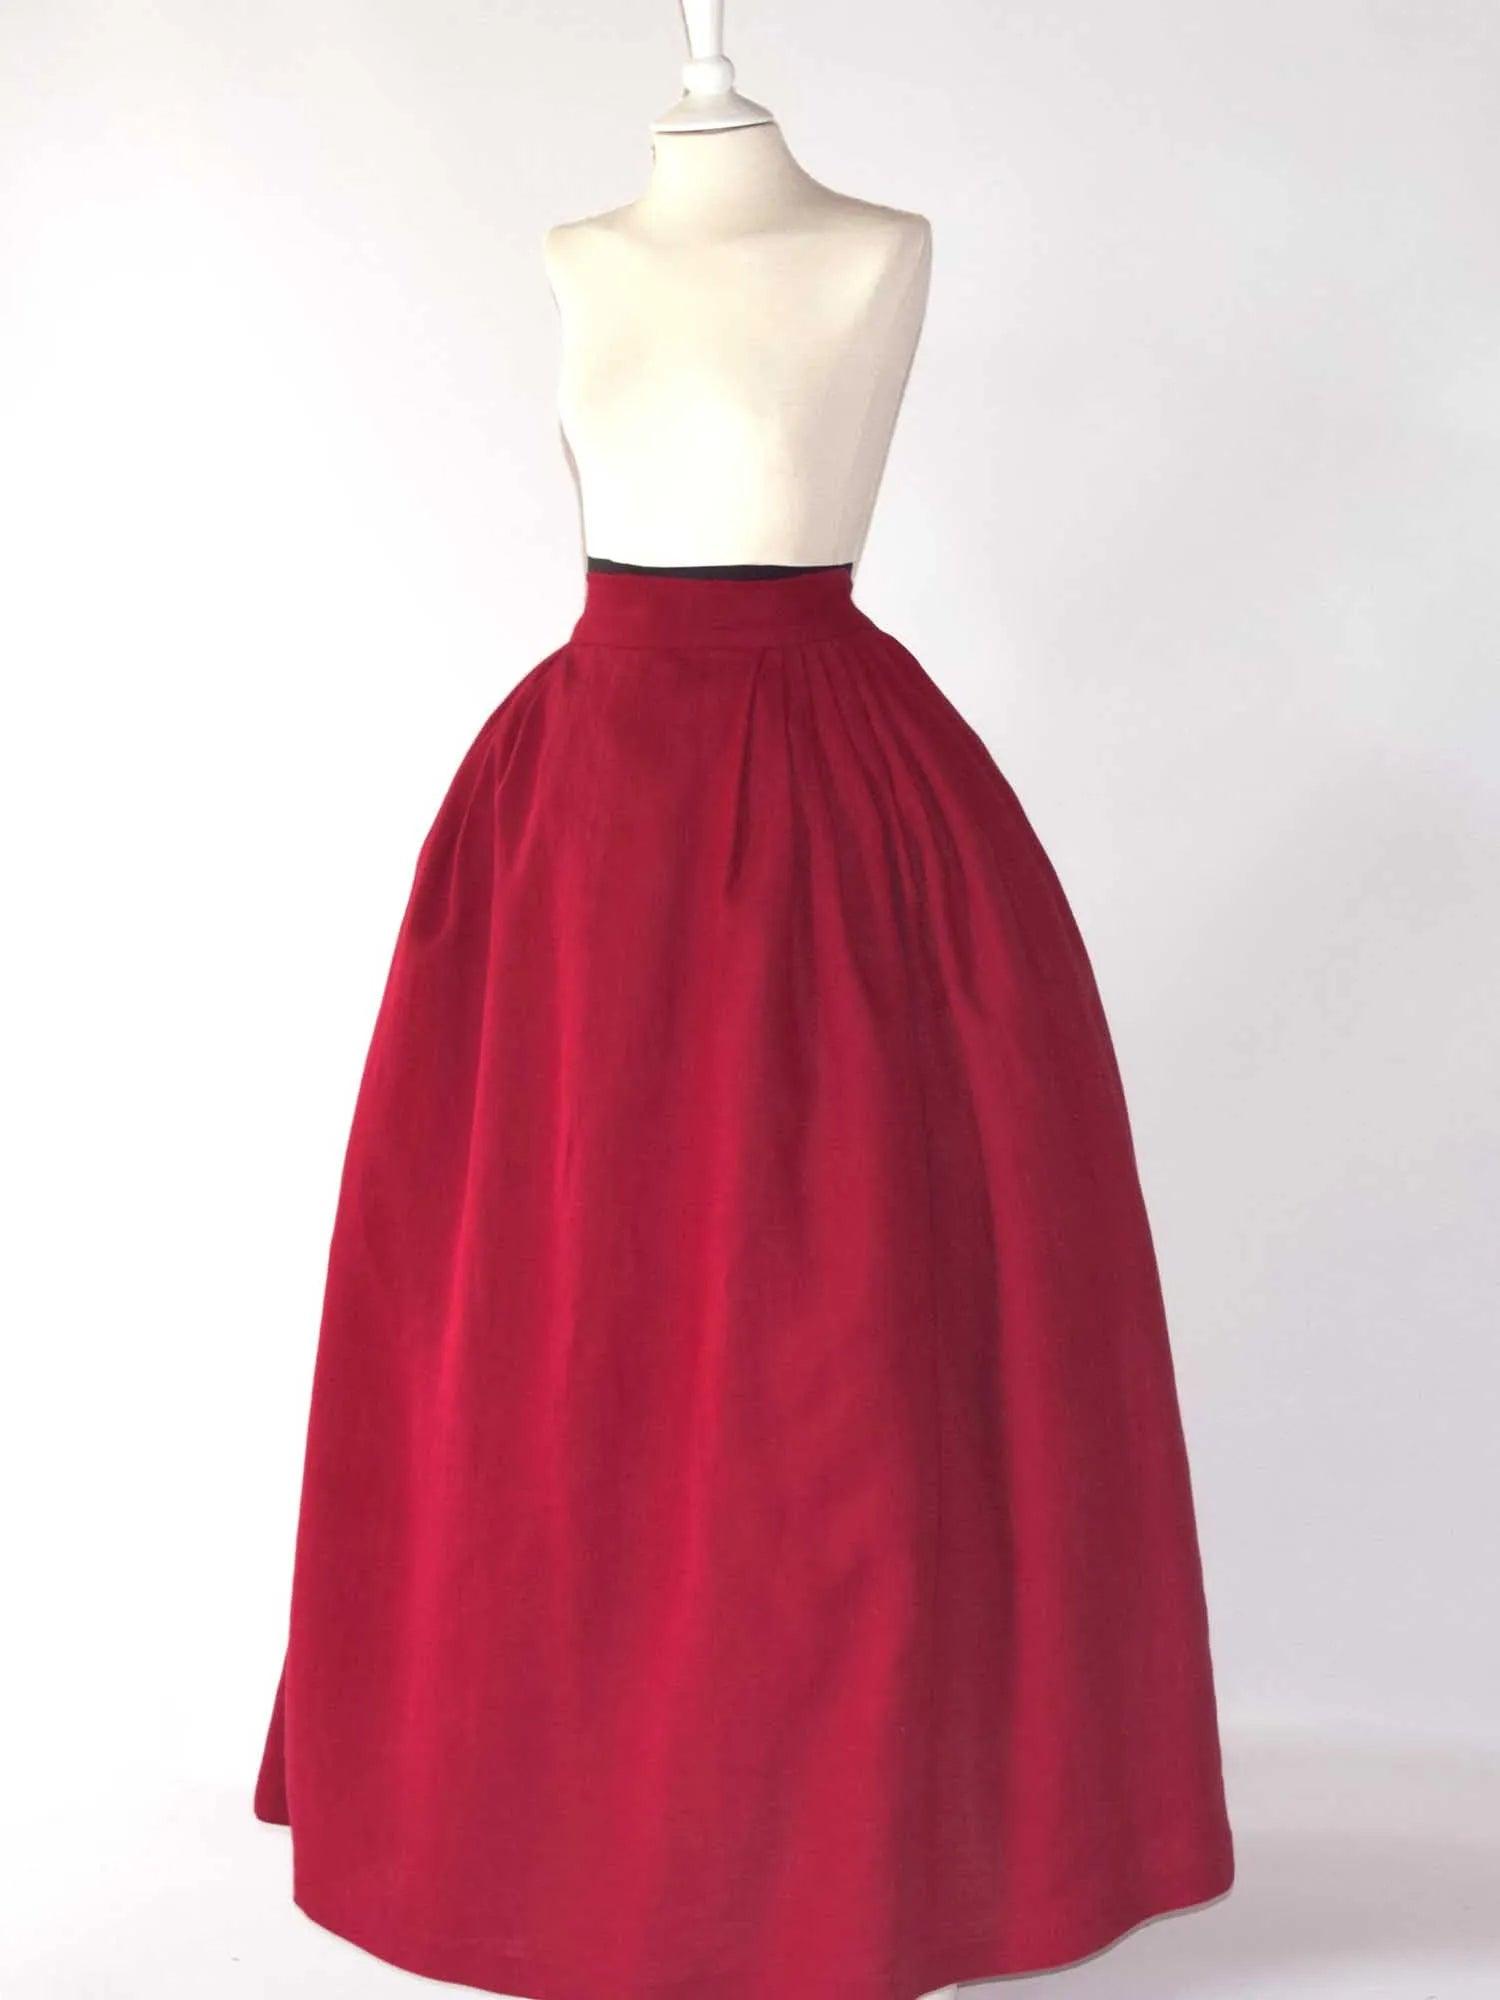 HELOISE, Historical Skirt in Cherry Red Linen - Atelier Serraspina